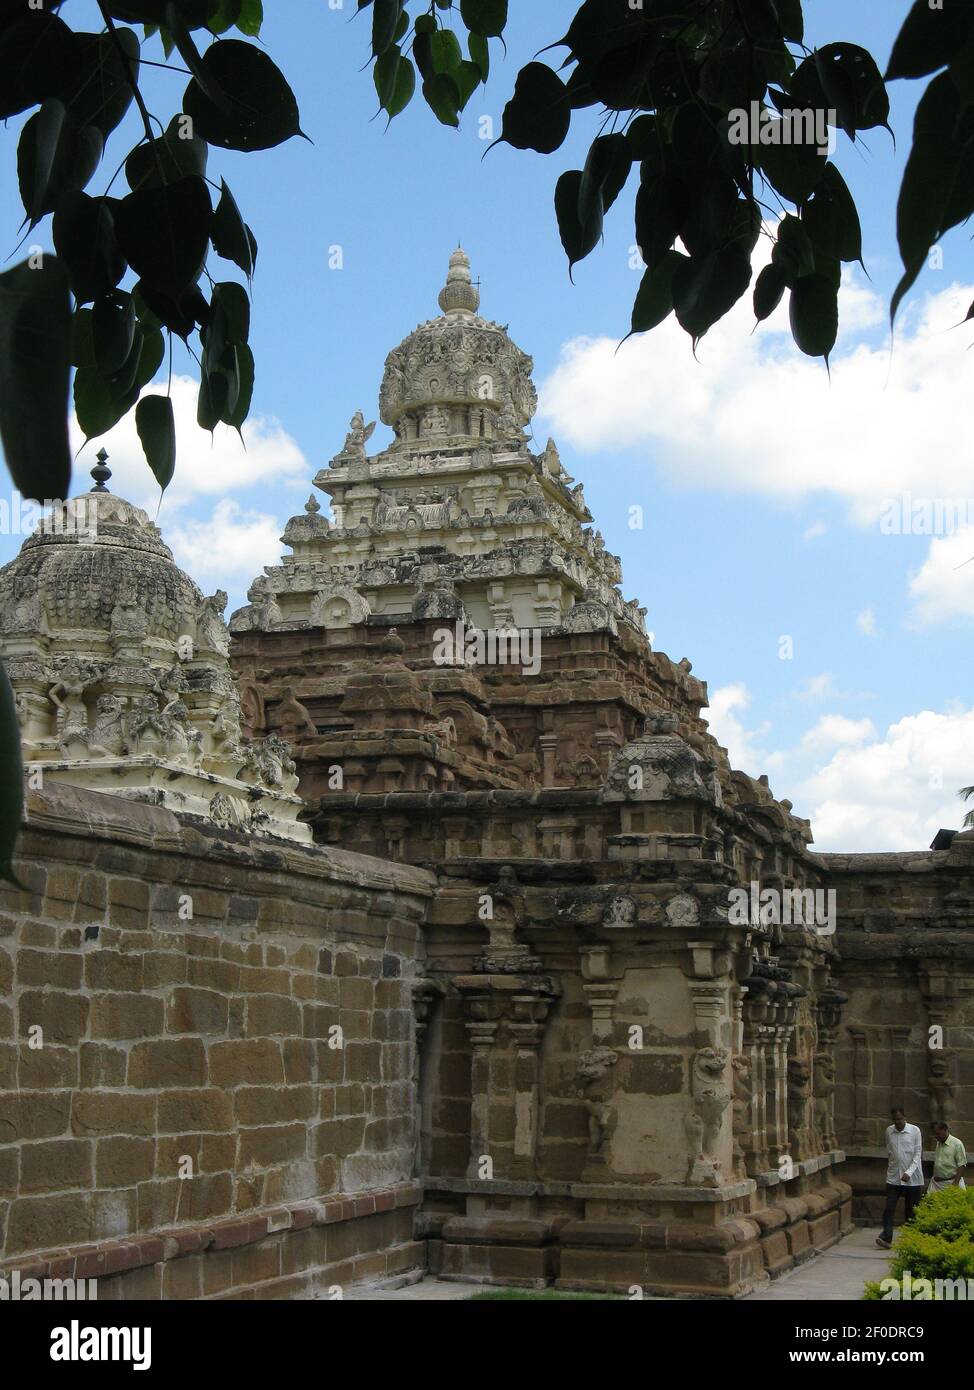 Ein Tempel der indischen Götter in Südindien bei Kanchipuram In Tamil Nadu Indien klickte am 5. Oktober 2008 Stockfoto